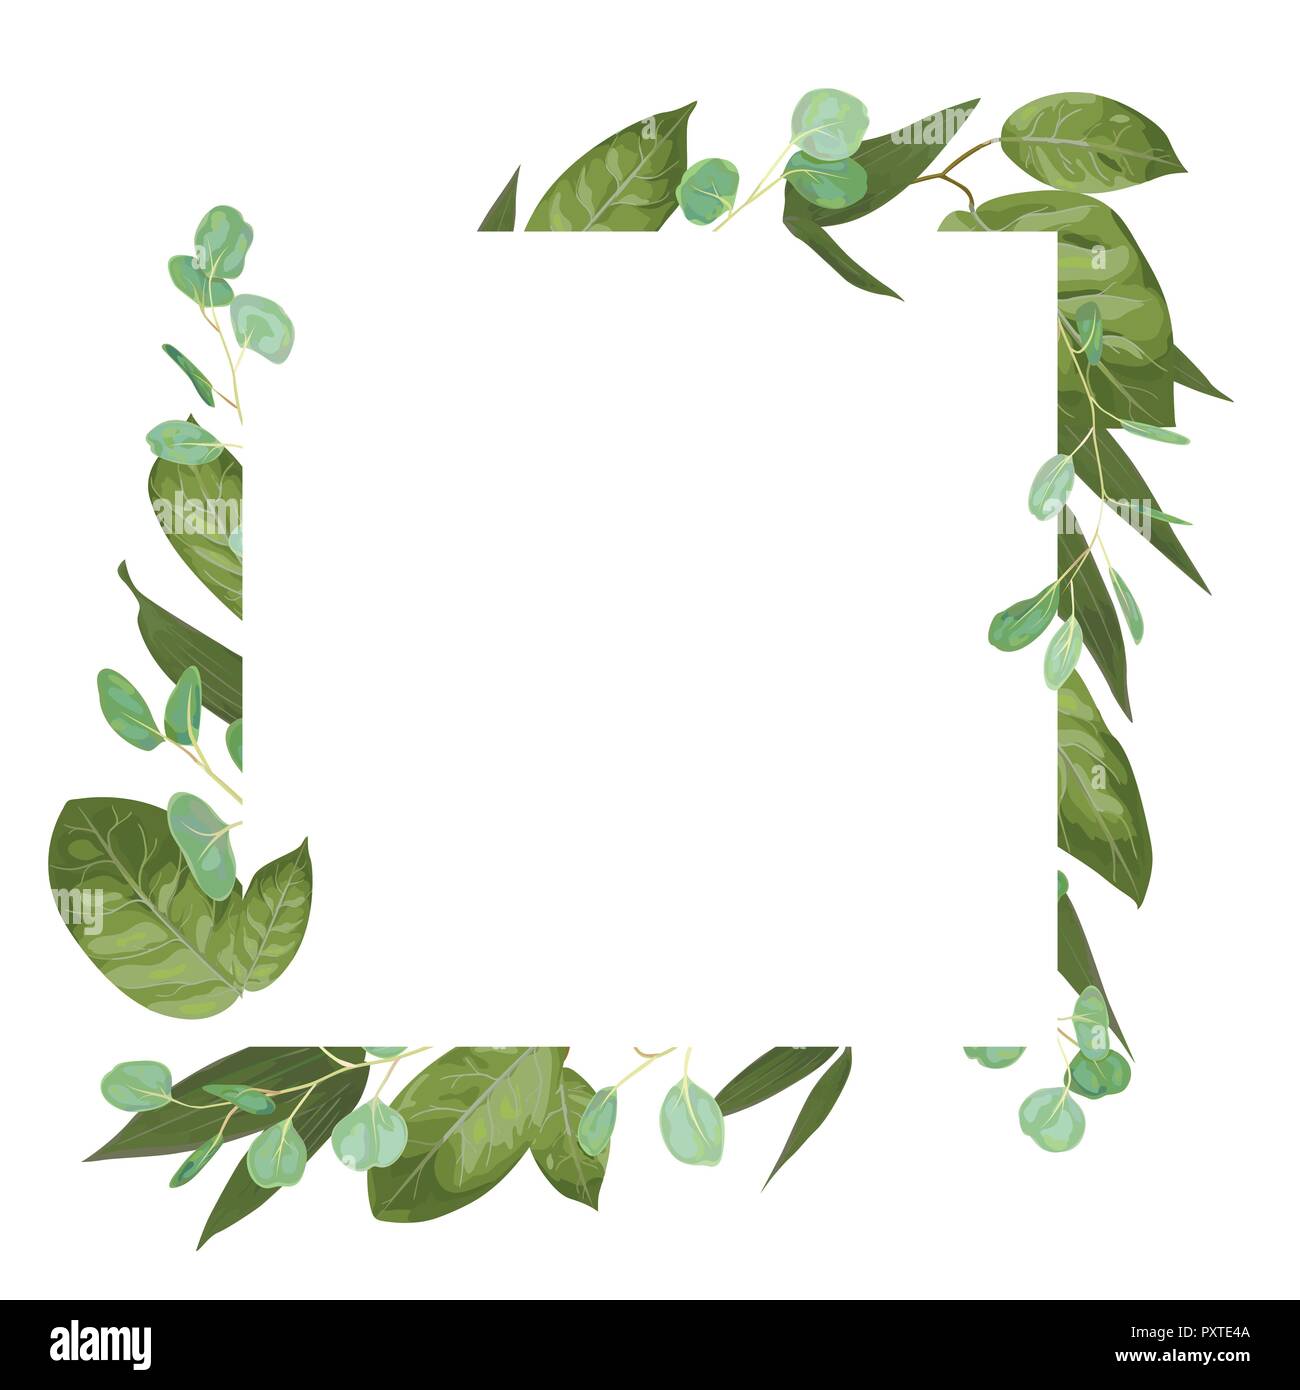 Carte vecteur floral design avec aquarelle verte, d'herbes, de feuilles d'eucalyptus, lily feuilles, vert botanique, cadre décoratif, carré. Accueil mignon, post Illustration de Vecteur